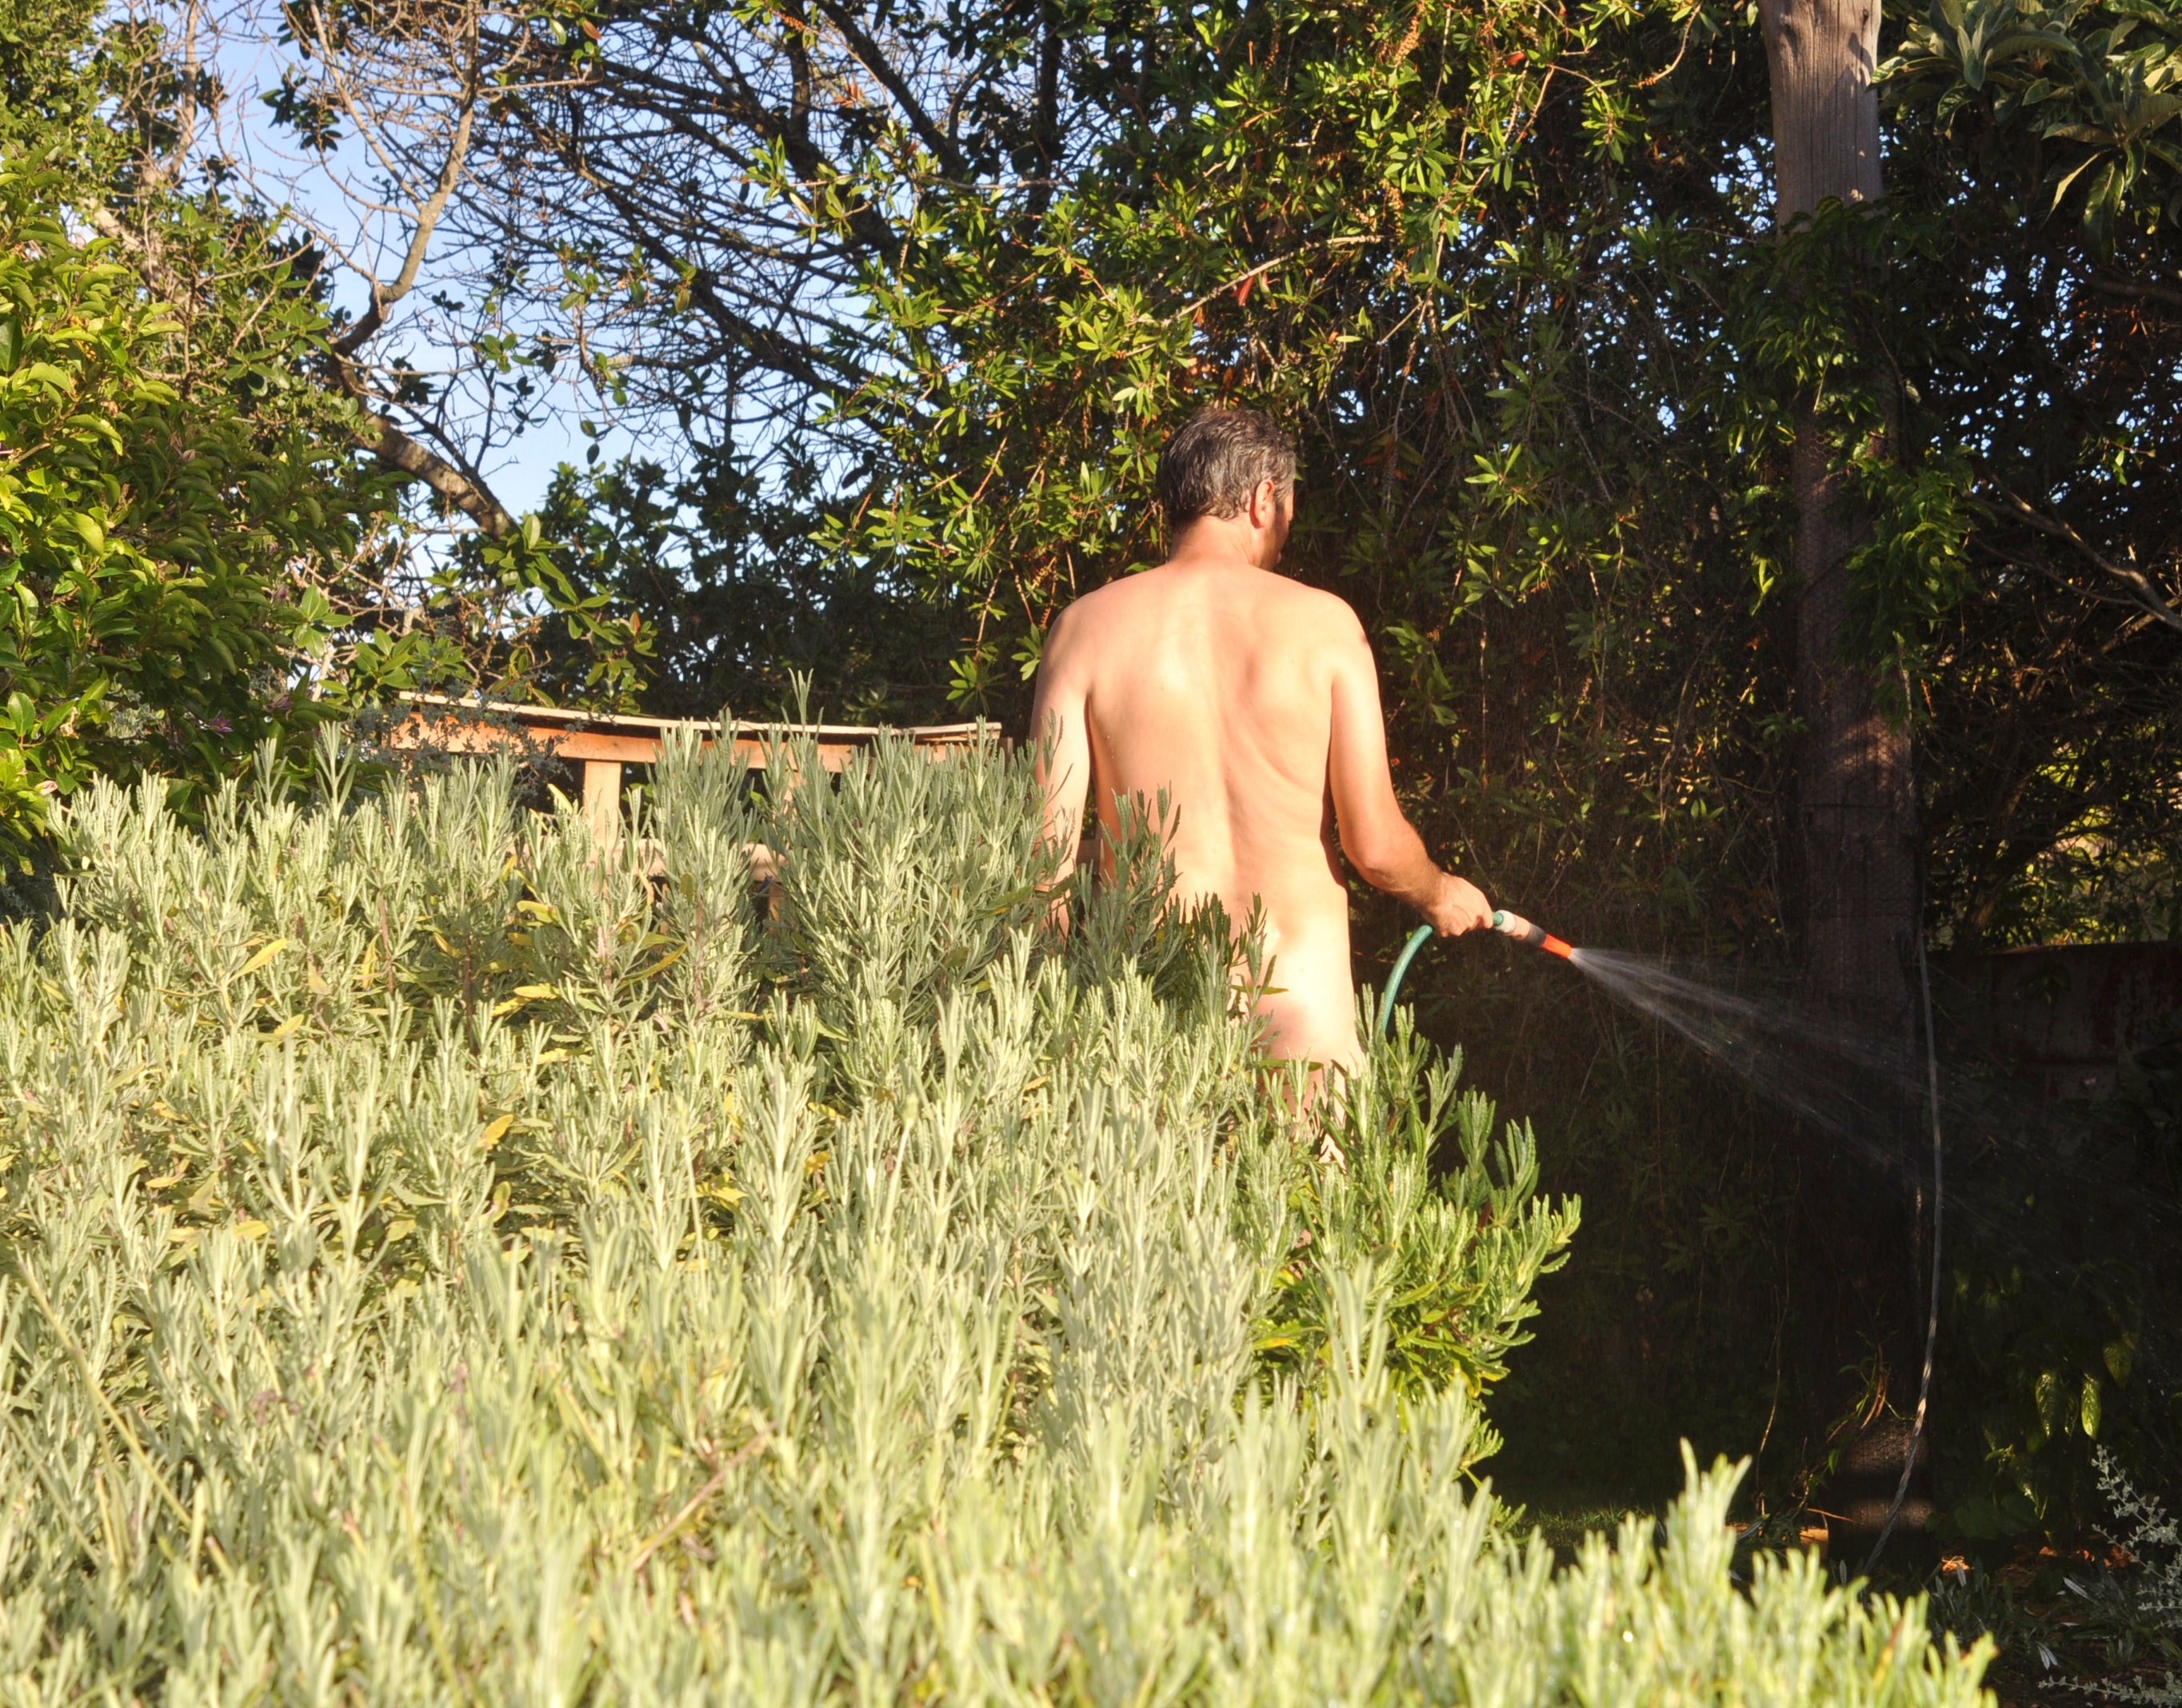 Nude in the garden